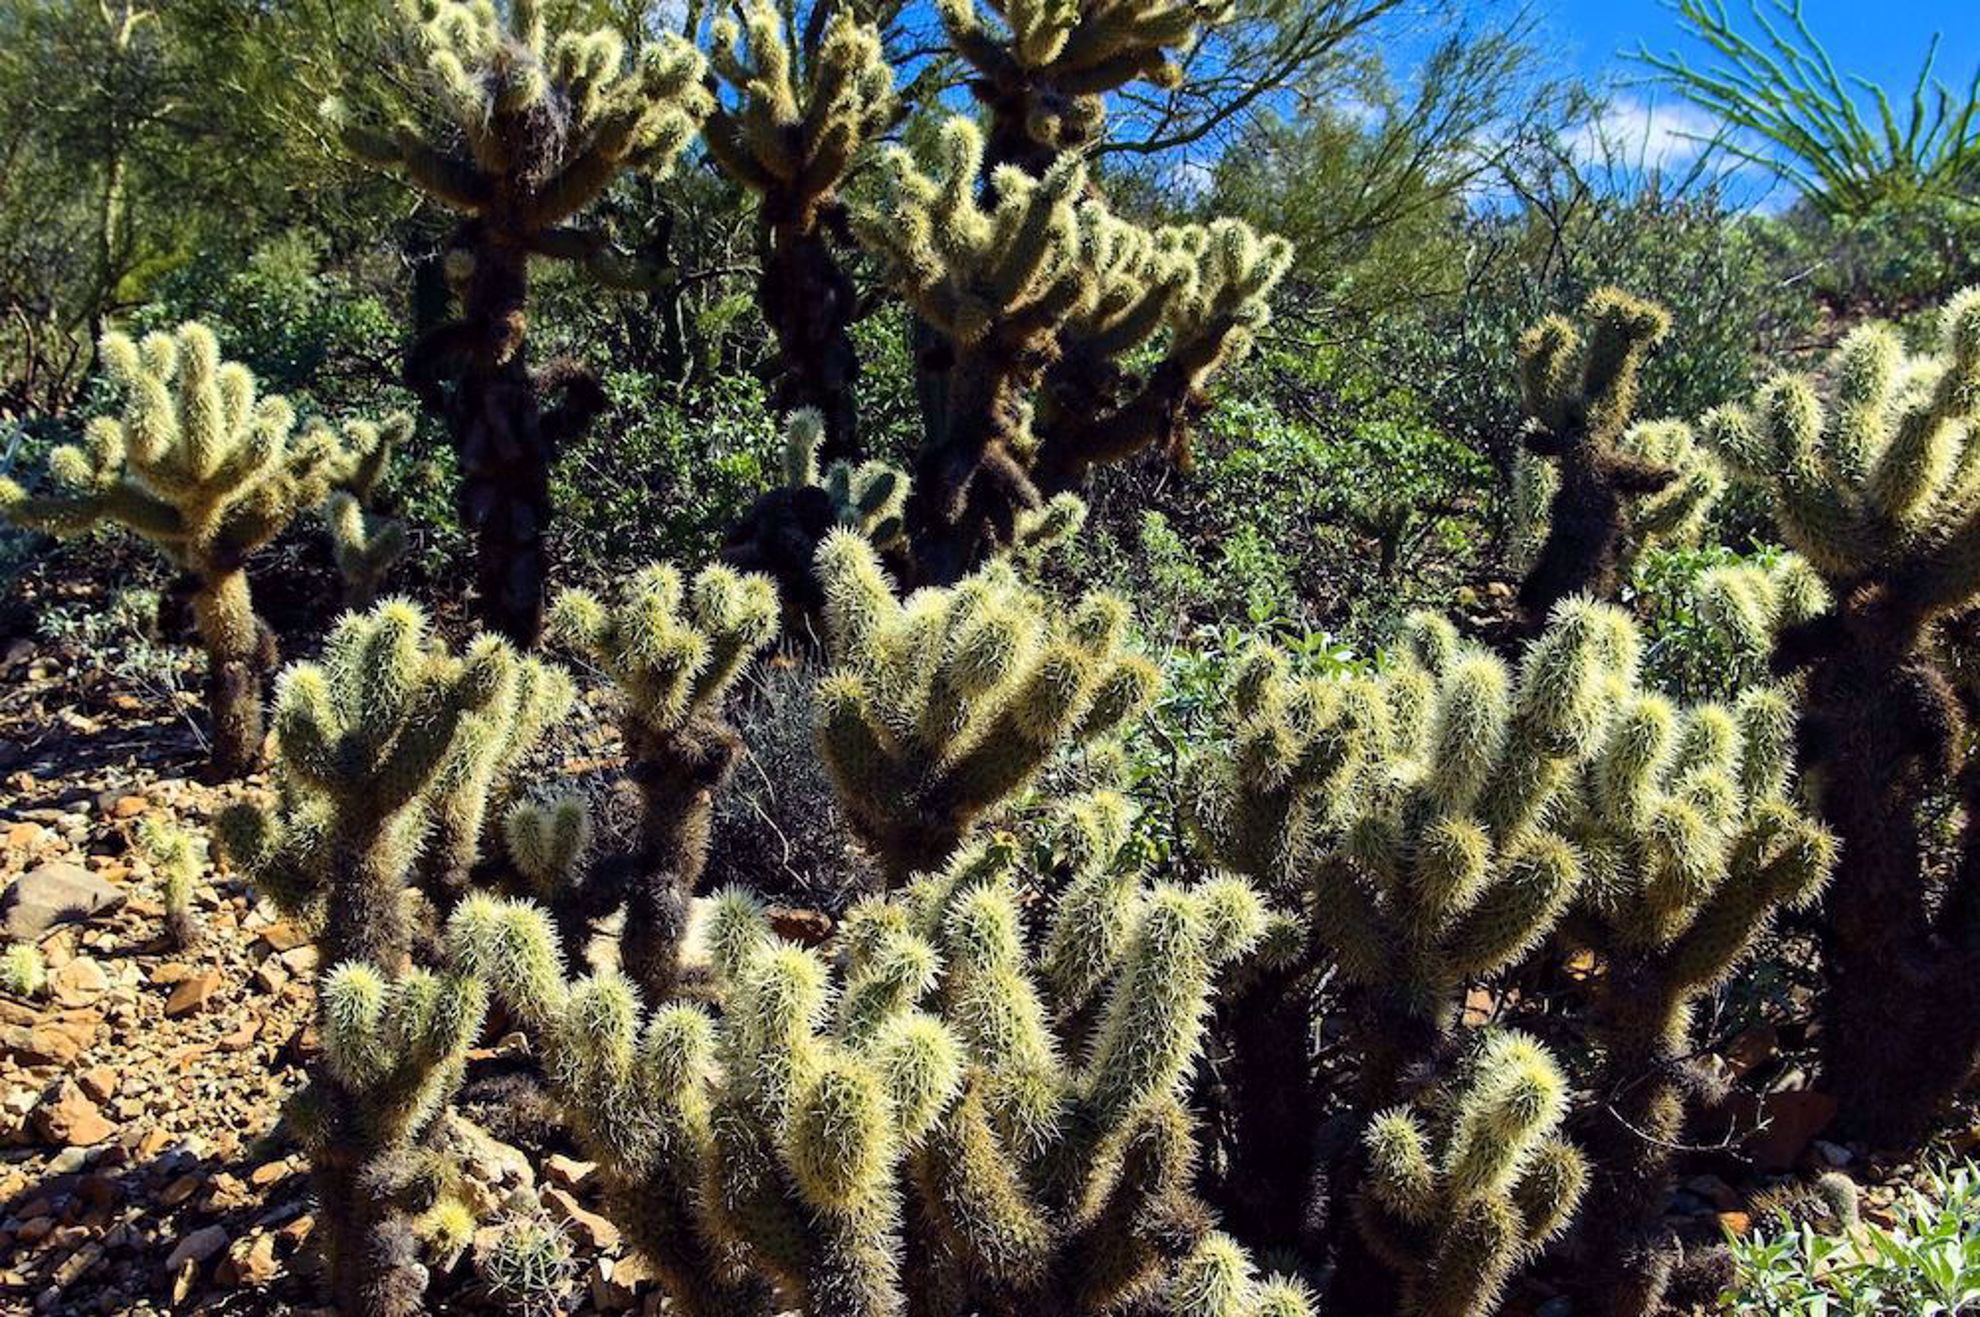 Cactus along the trail for El Tour de Tucson